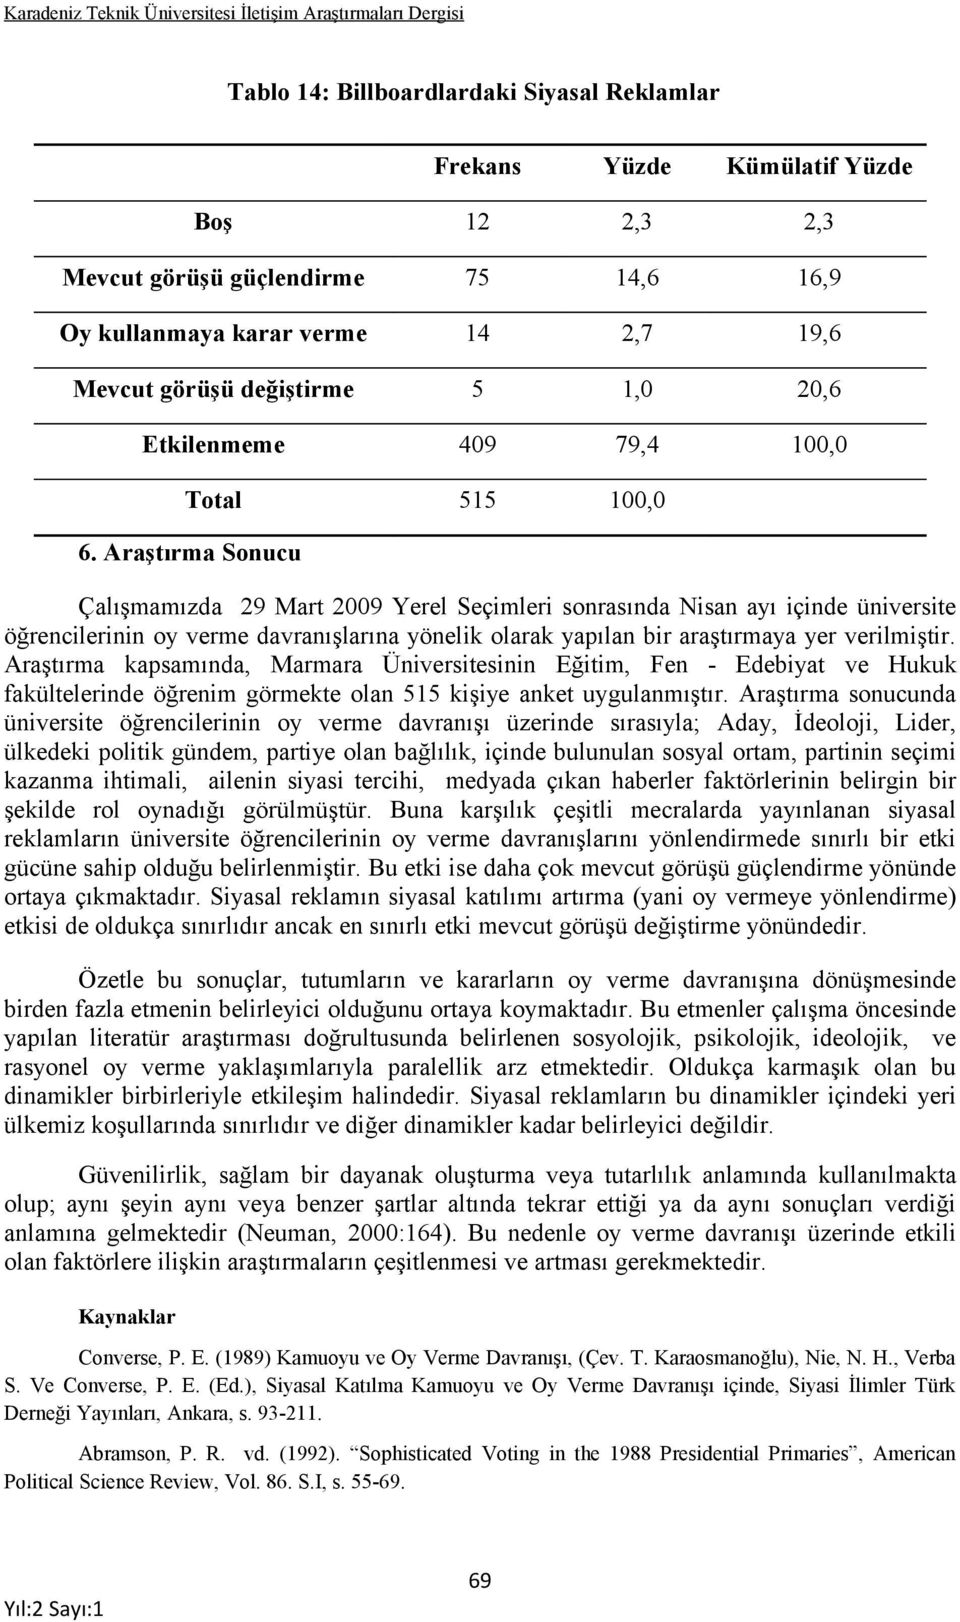 Araştırma kapsamında, Marmara Üniversitesinin Eğitim, Fen - Edebiyat ve Hukuk fakültelerinde öğrenim görmekte olan 515 kişiye anket uygulanmıştır.